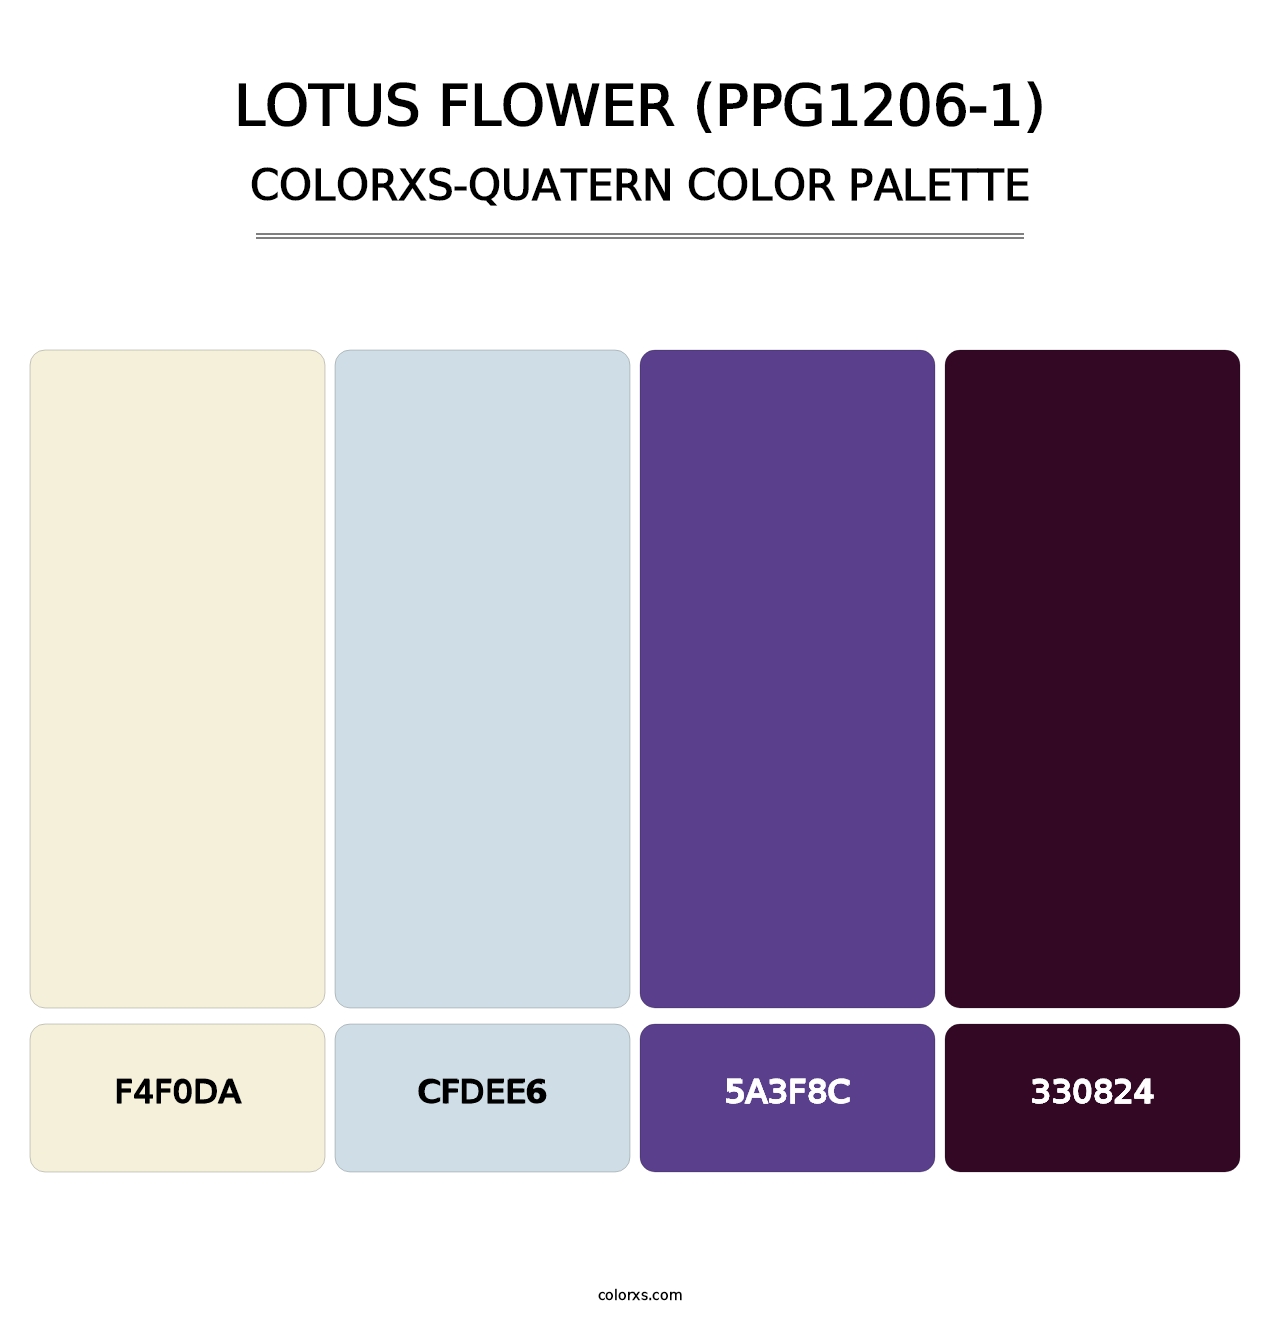 Lotus Flower (PPG1206-1) - Colorxs Quatern Palette